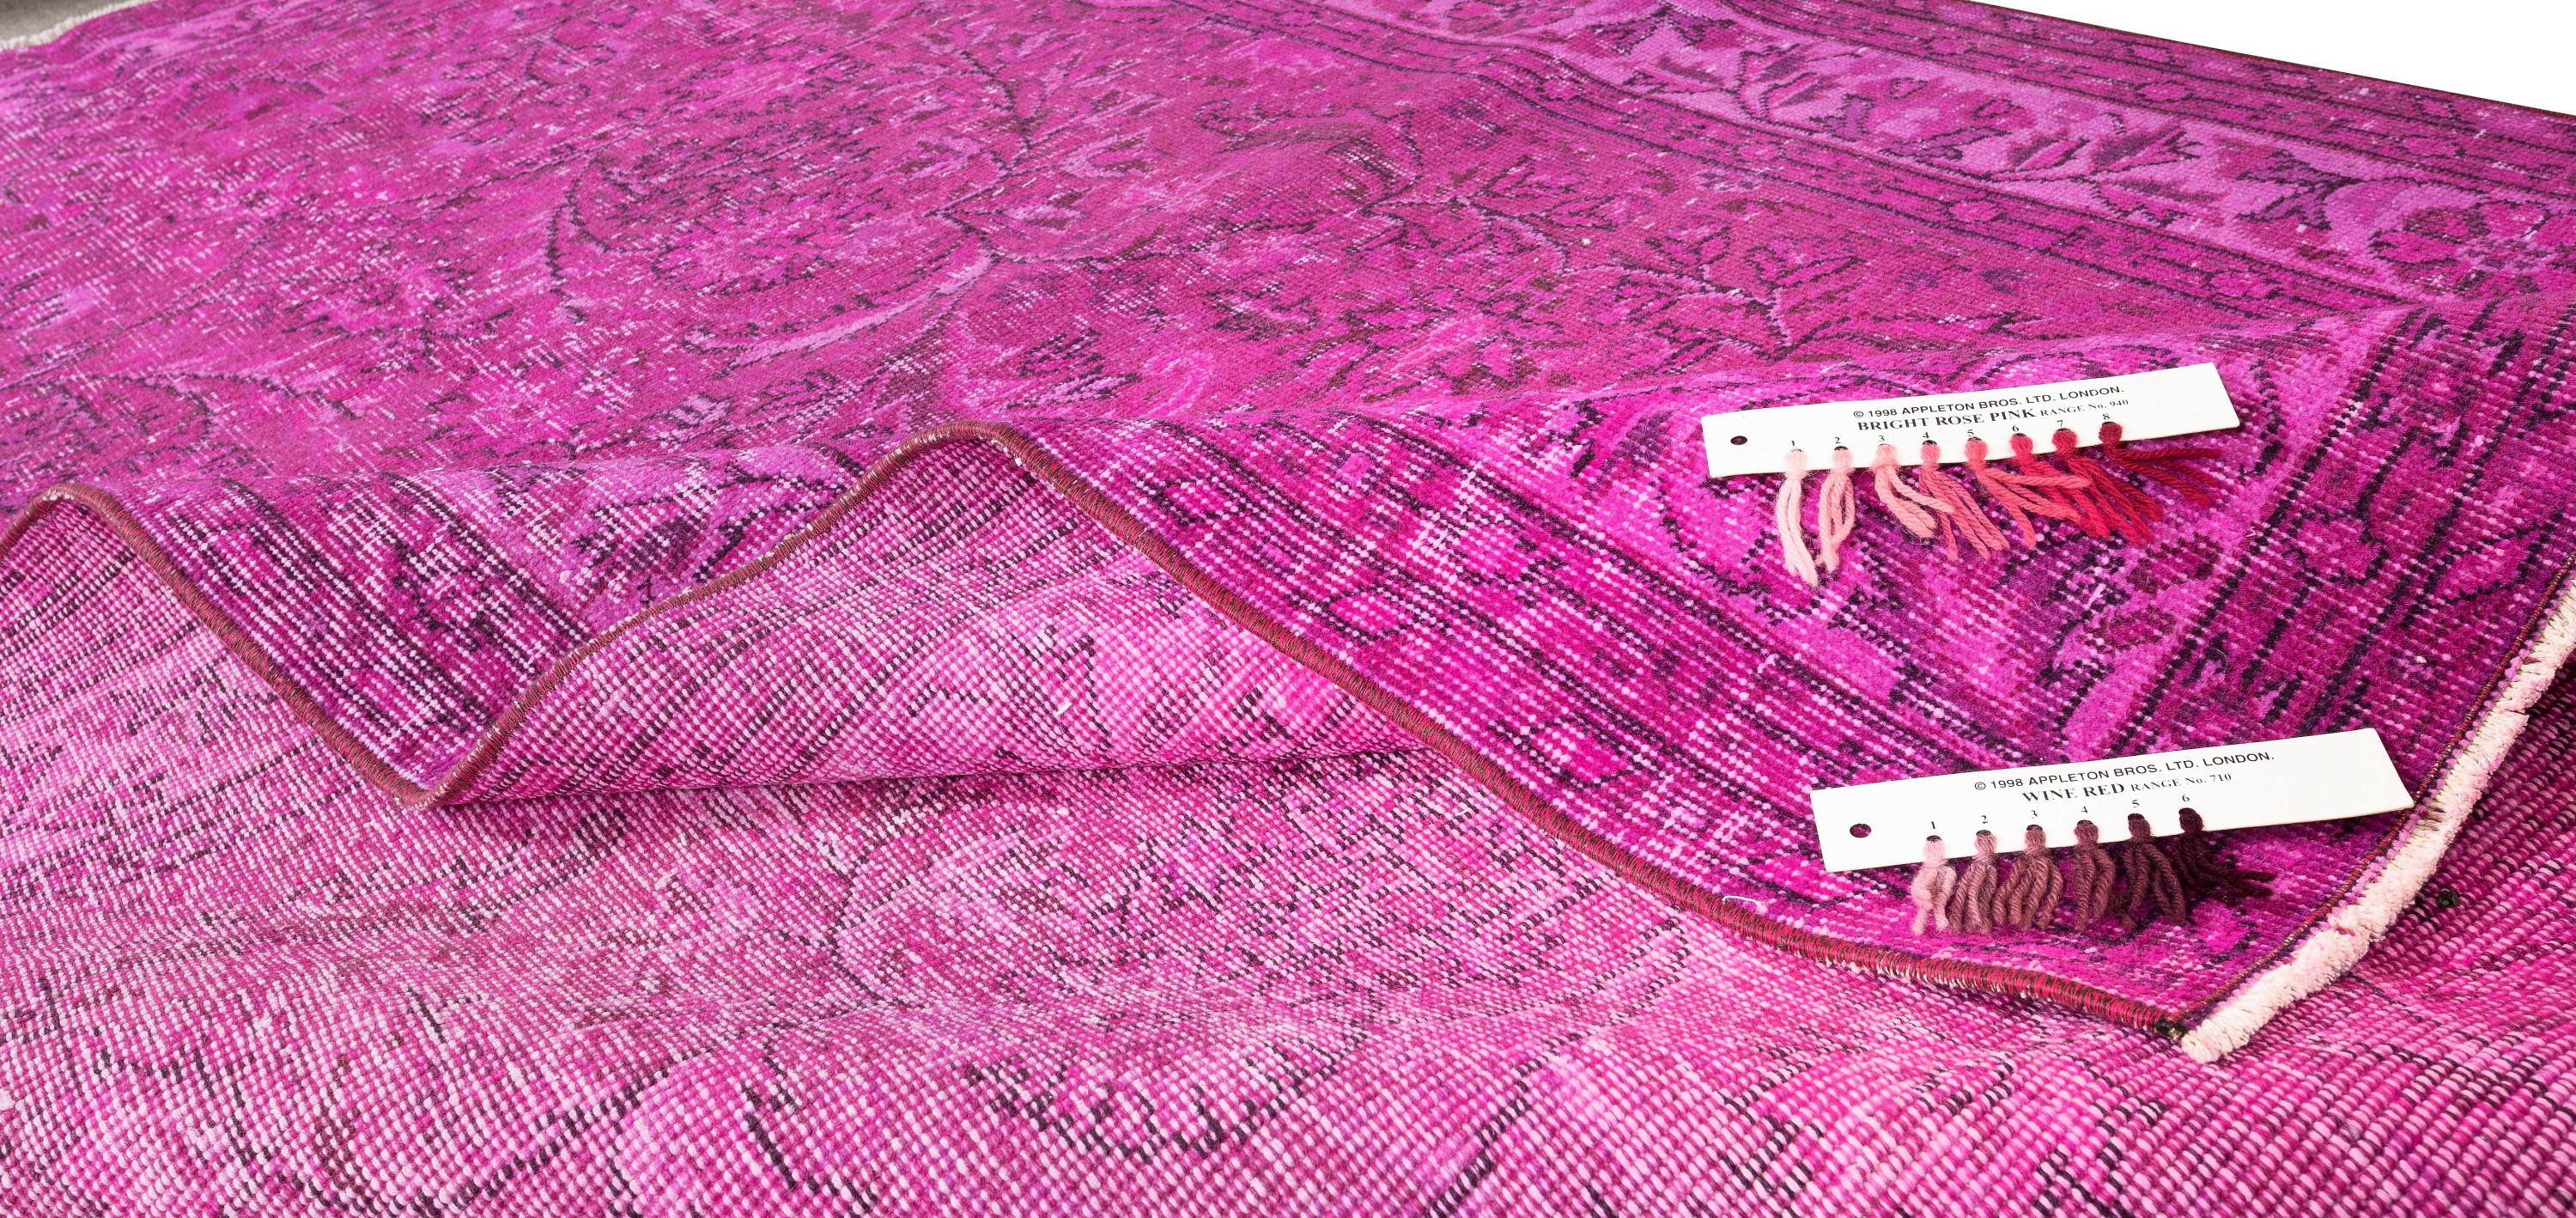 Noué à la main 5.3x8.6 Ft Handmade Turkish Decorative Rug in Fuchsia Pink for Modern Interiors (Tapis décoratif turc fait main en rose fuchsia pour les intérieurs modernes) en vente